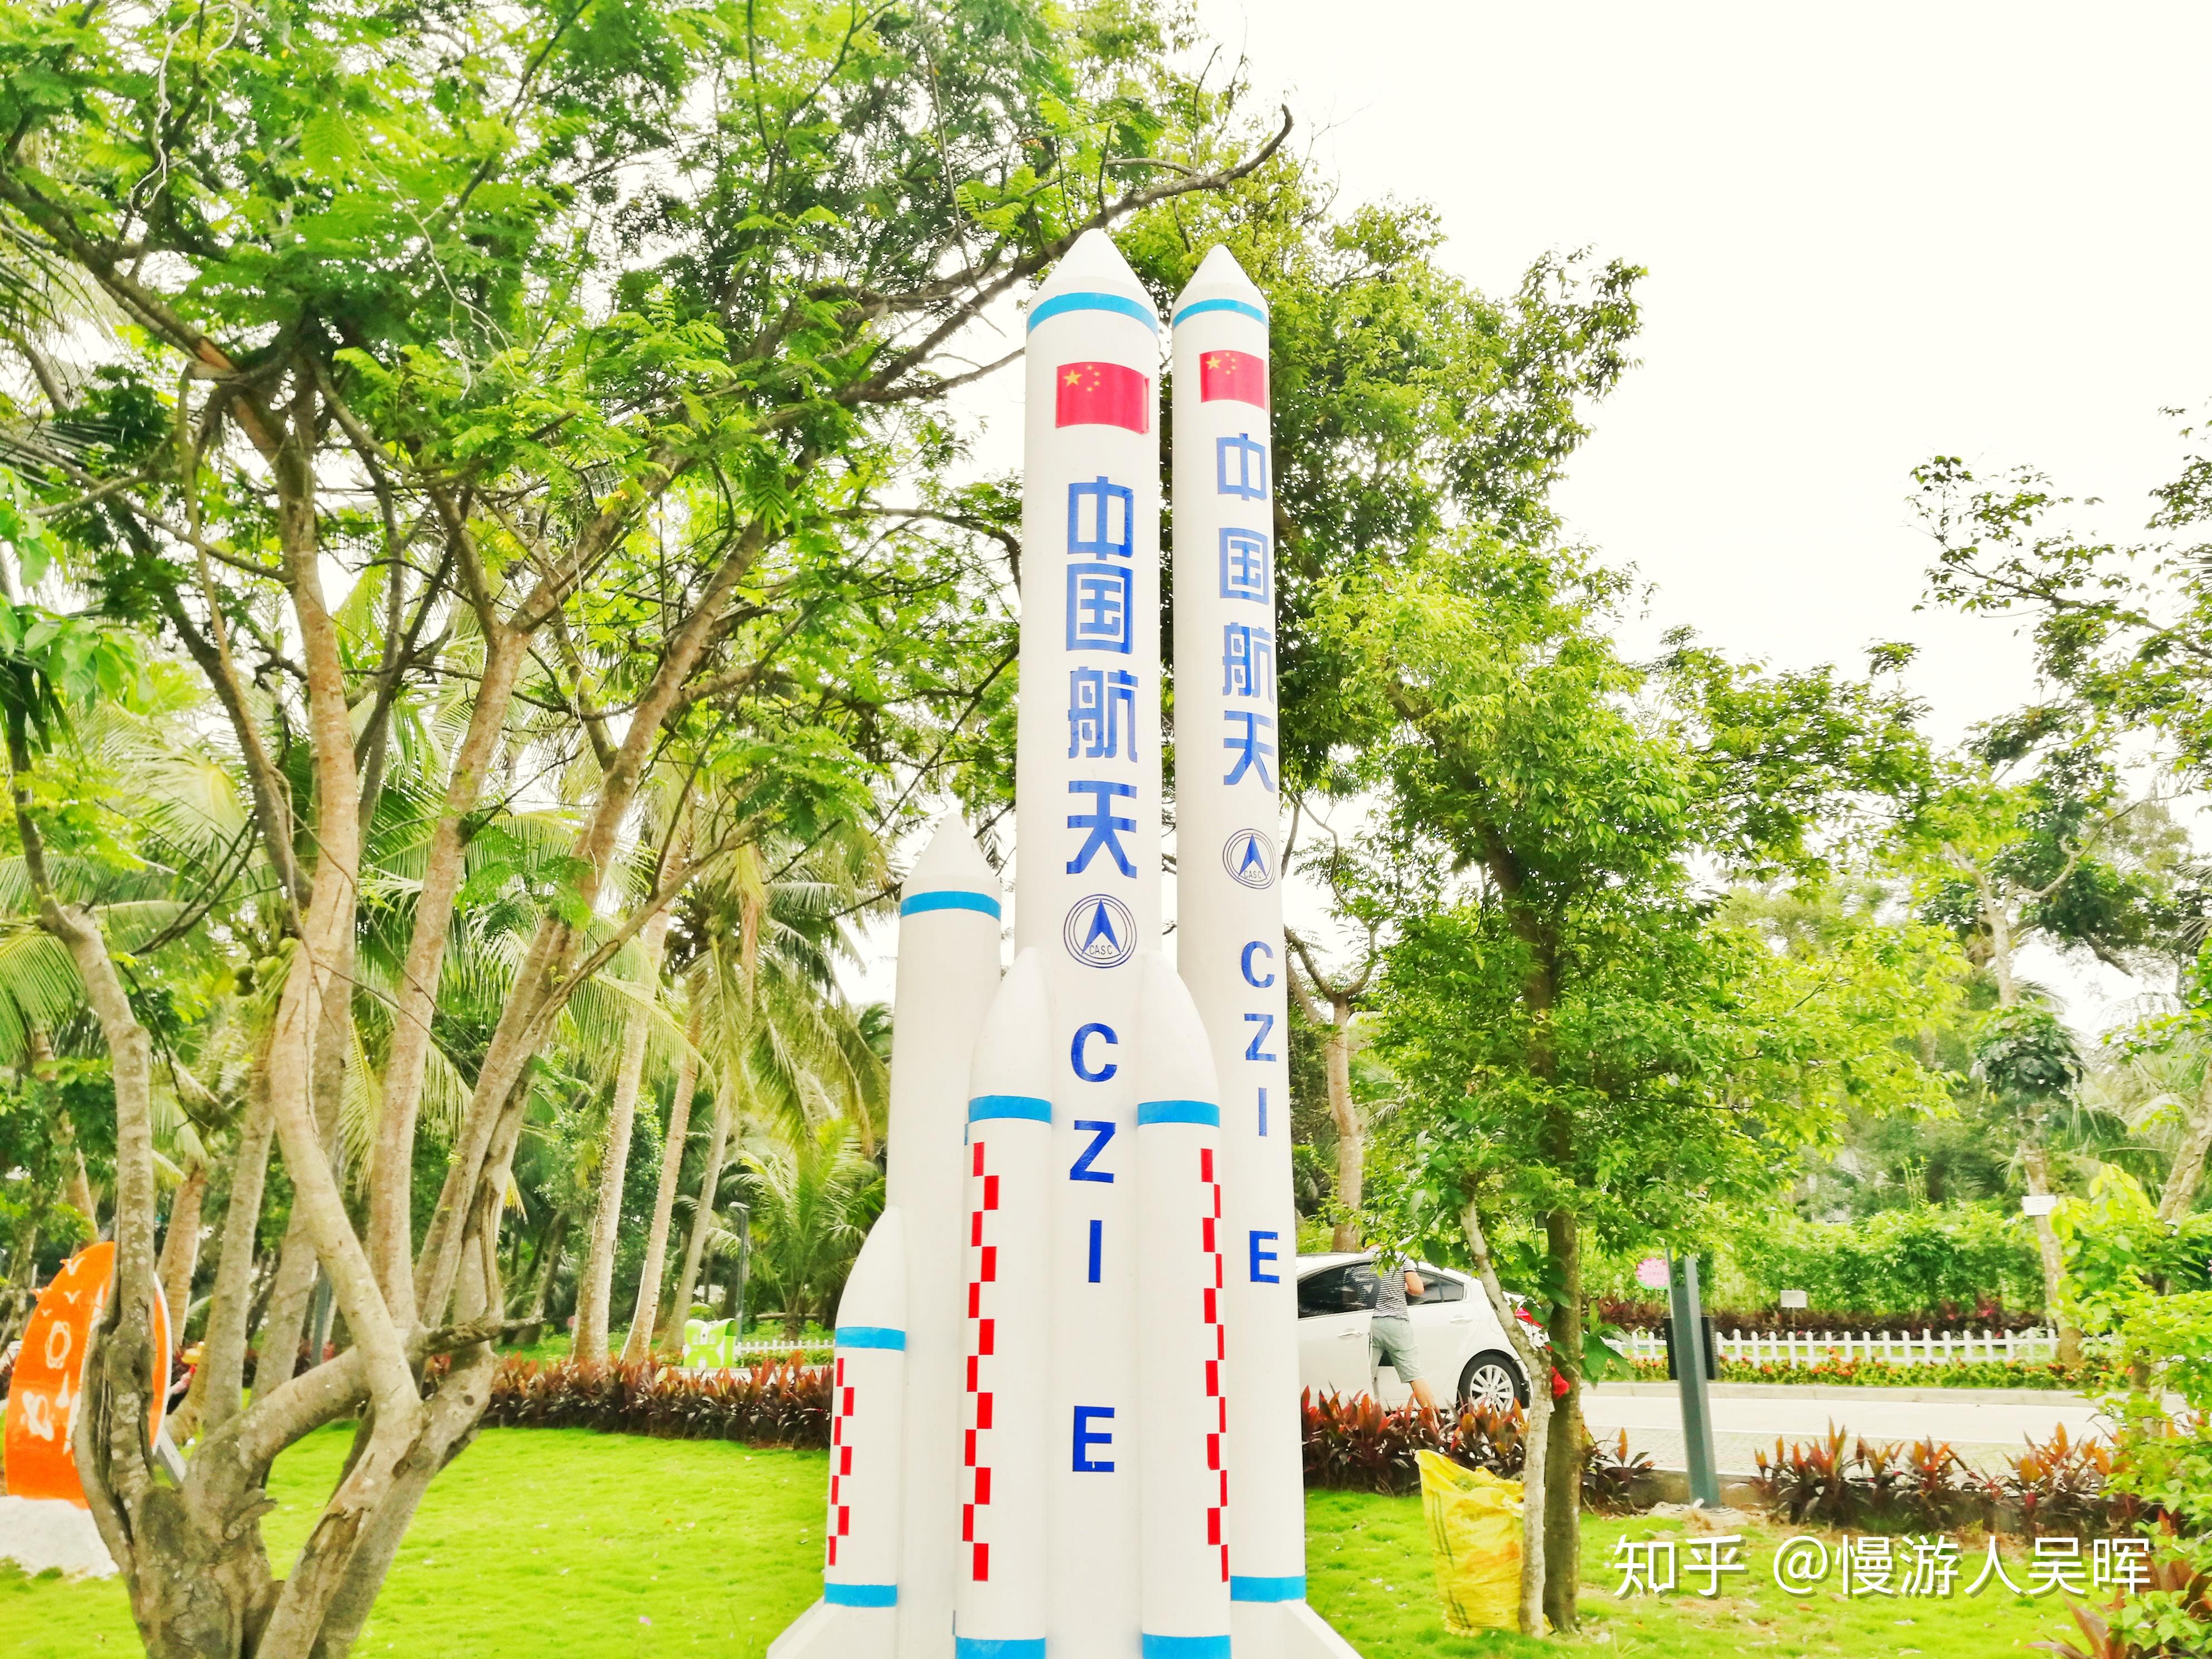 2022年7月24日，长五B遥三火箭在文昌航天发射场发射问天实验舱……__财经头条